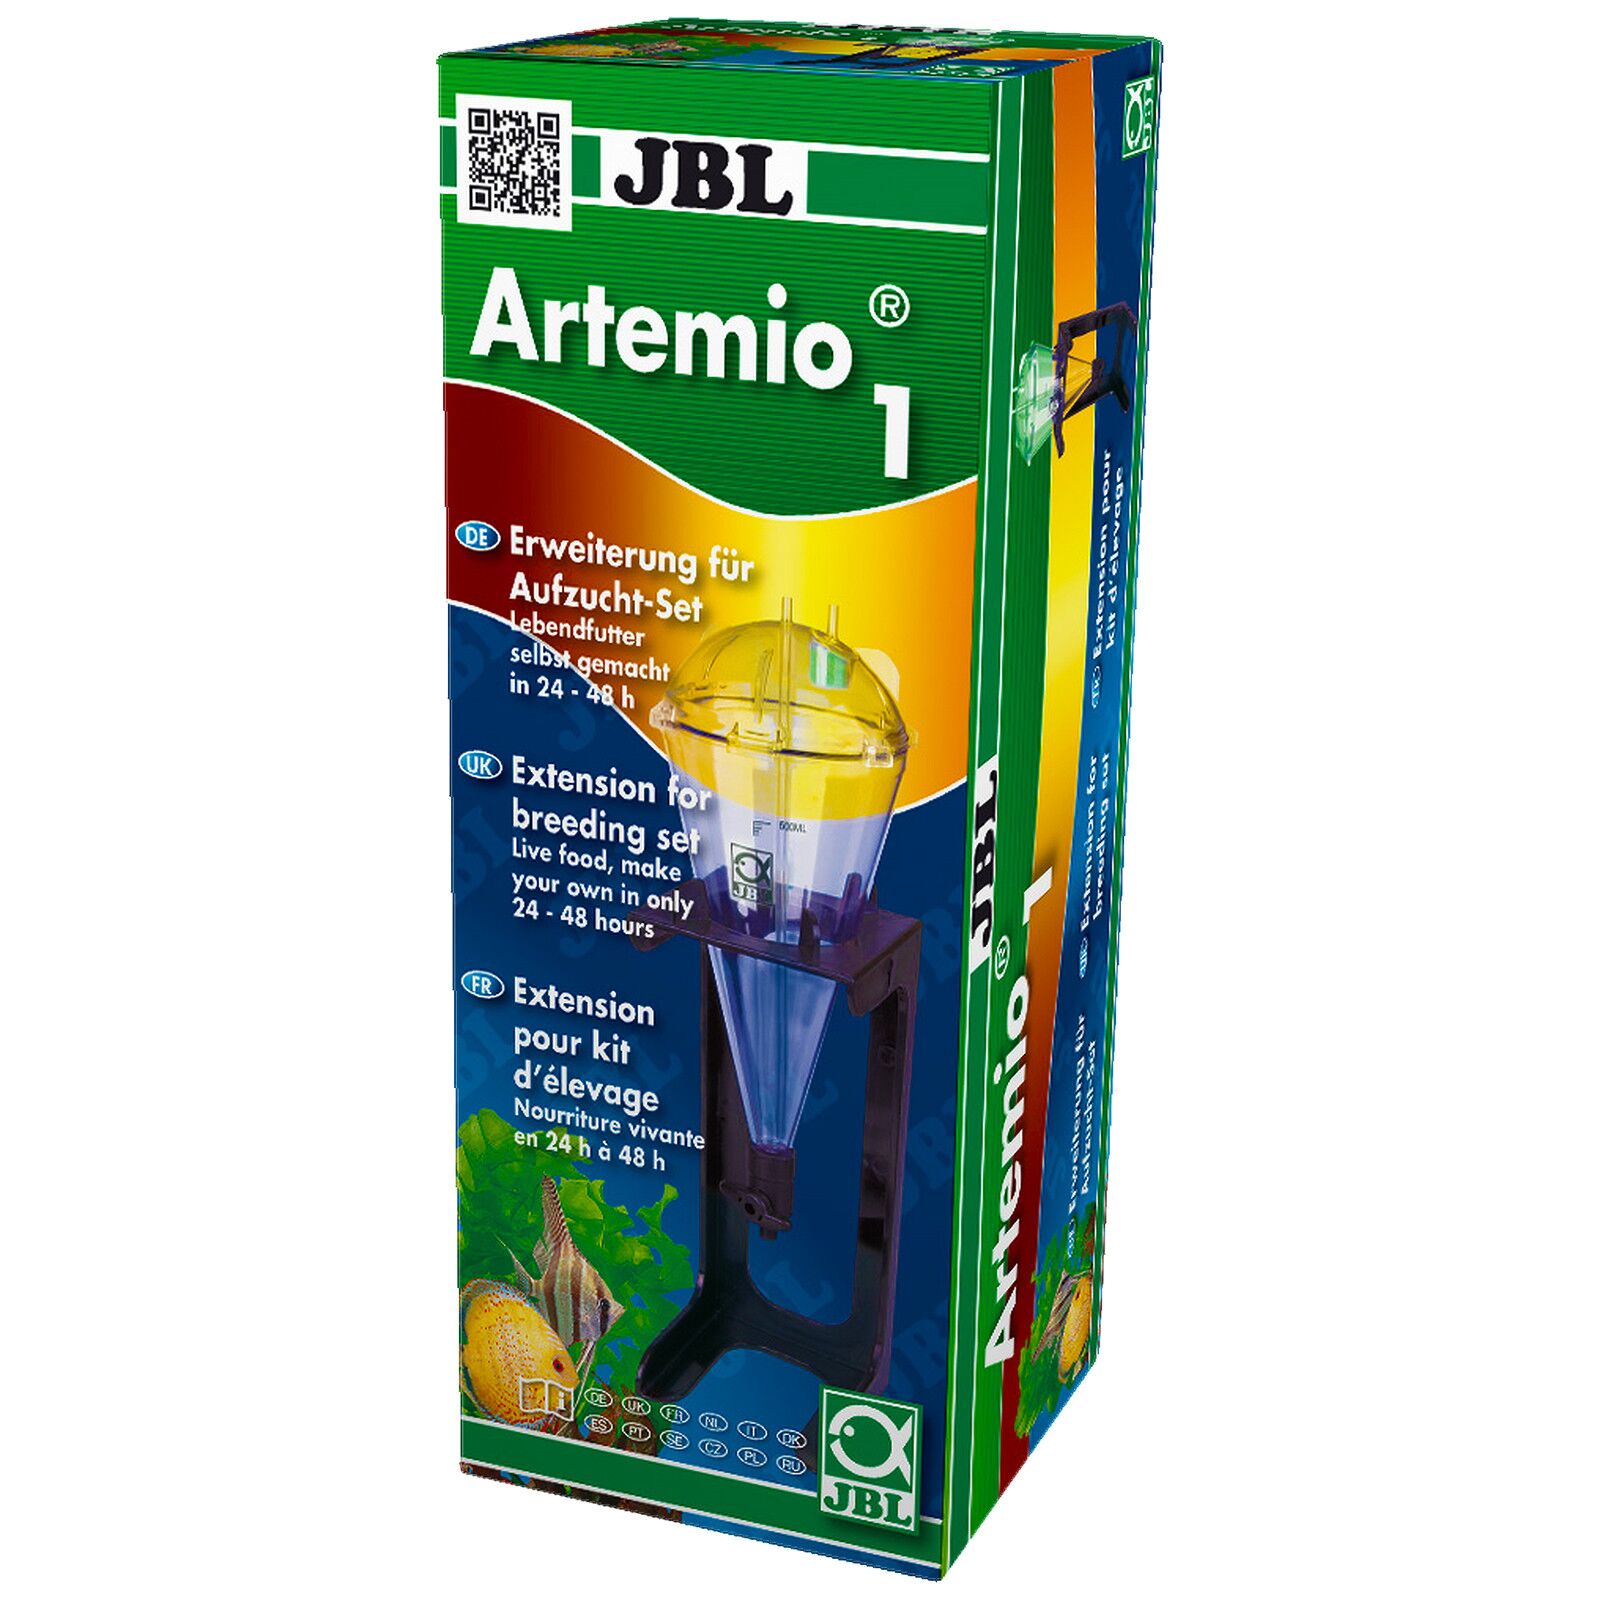 JBL - Artemio - 1 - Erweiterung